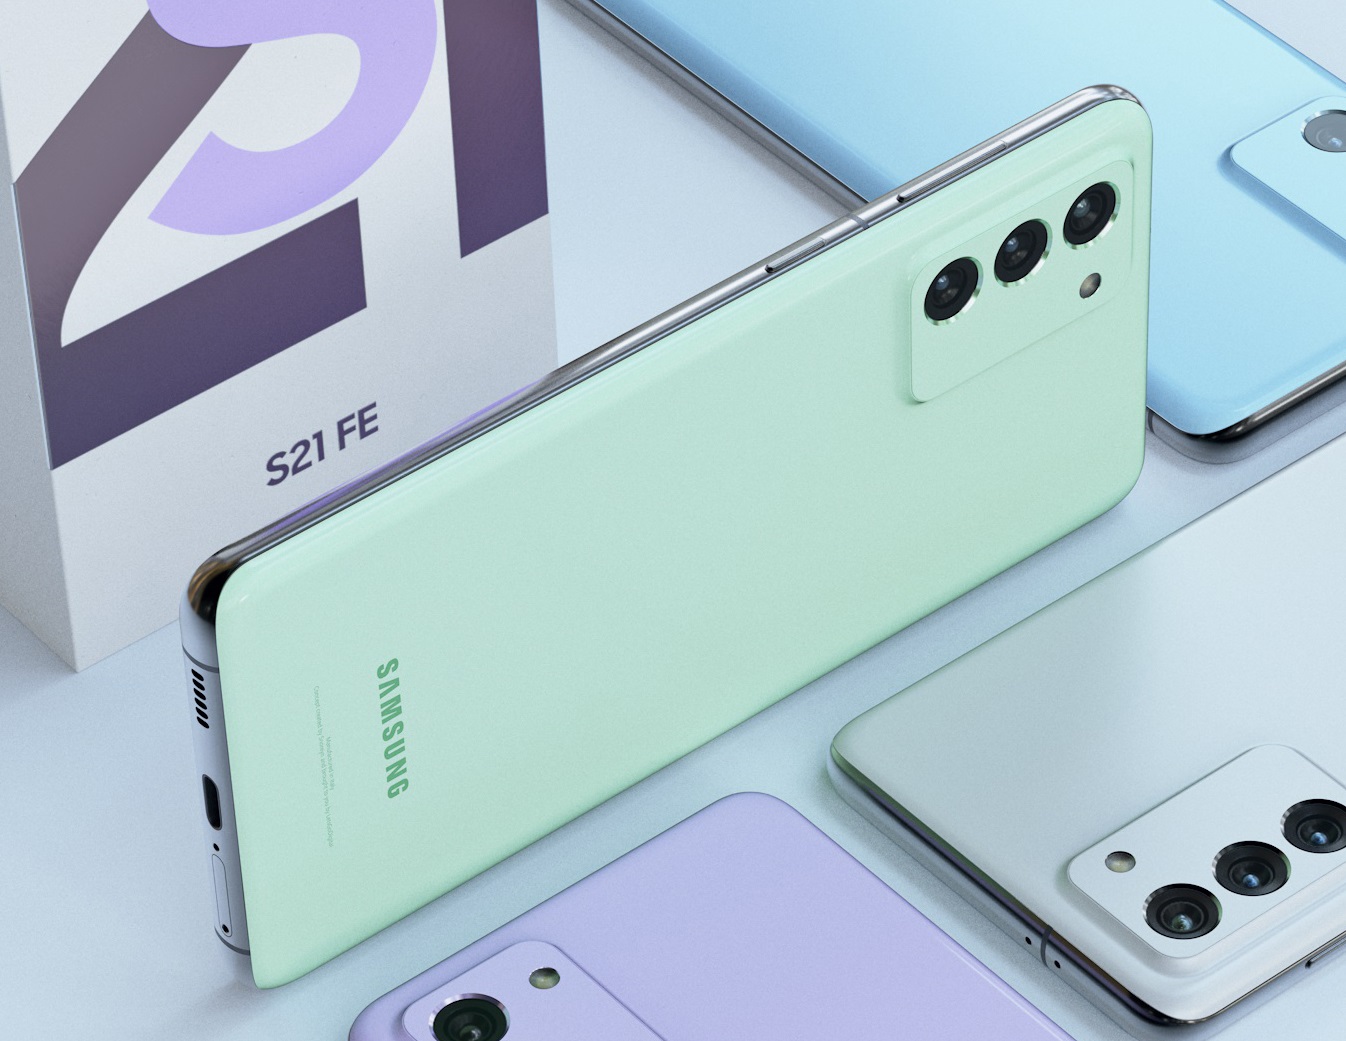 Смартфон Samsung Galaxy S21 FE замечен на сайте производителя